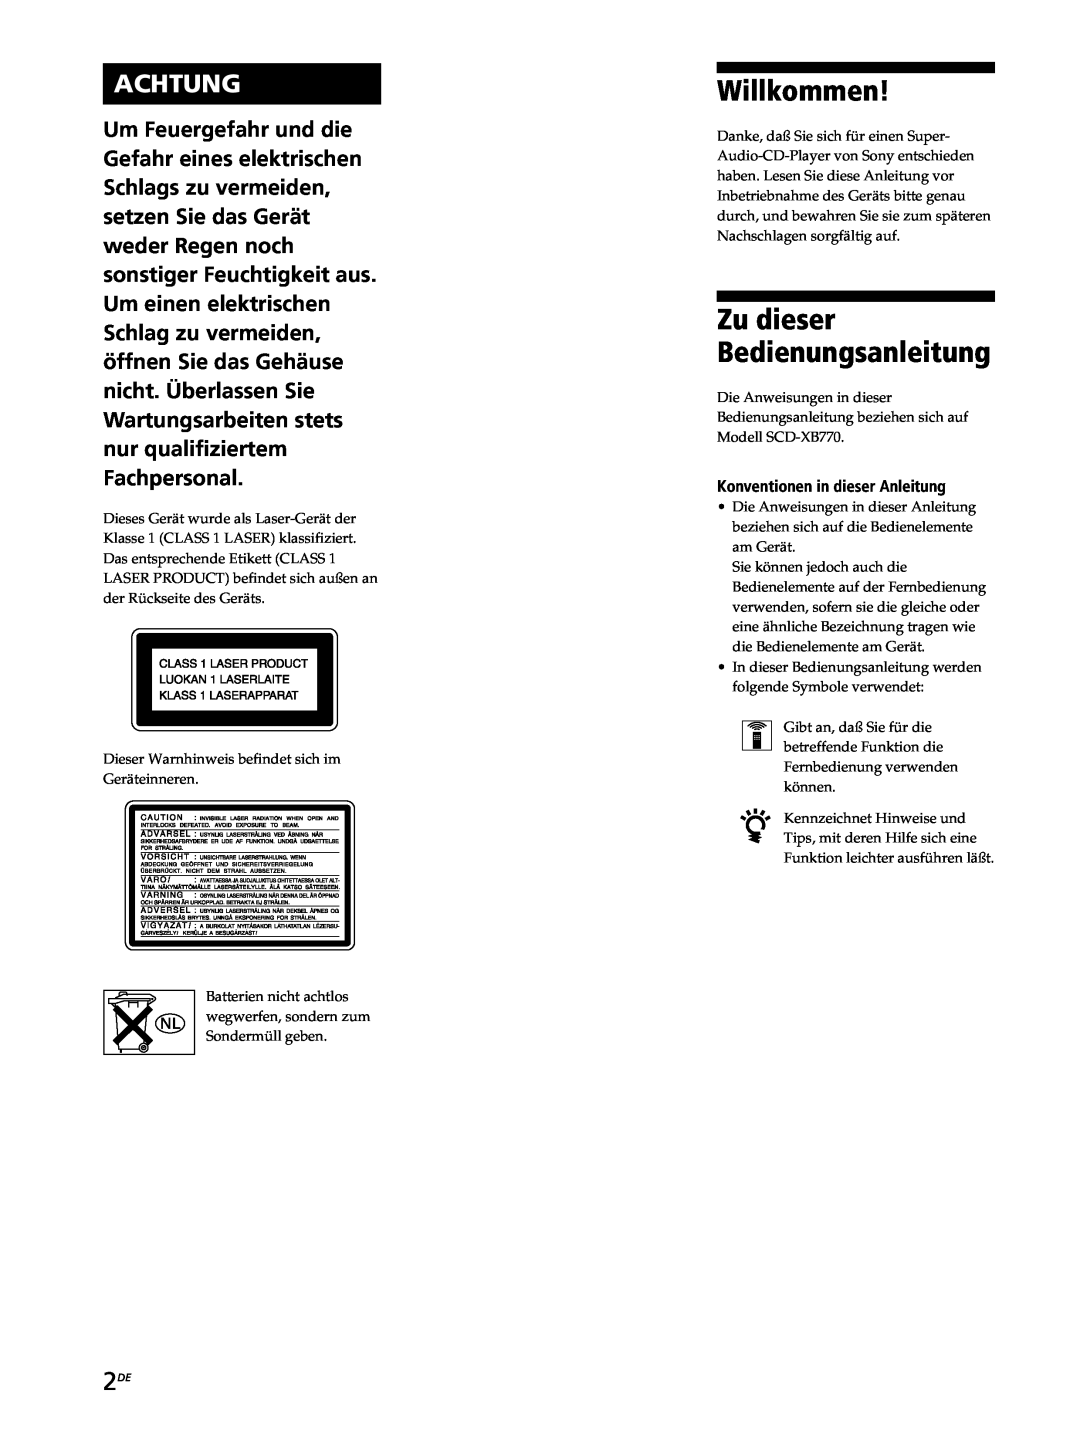 Sony SCD-XB770 operating instructions Willkommen, Achtung, Zu dieser Bedienungsanleitung 